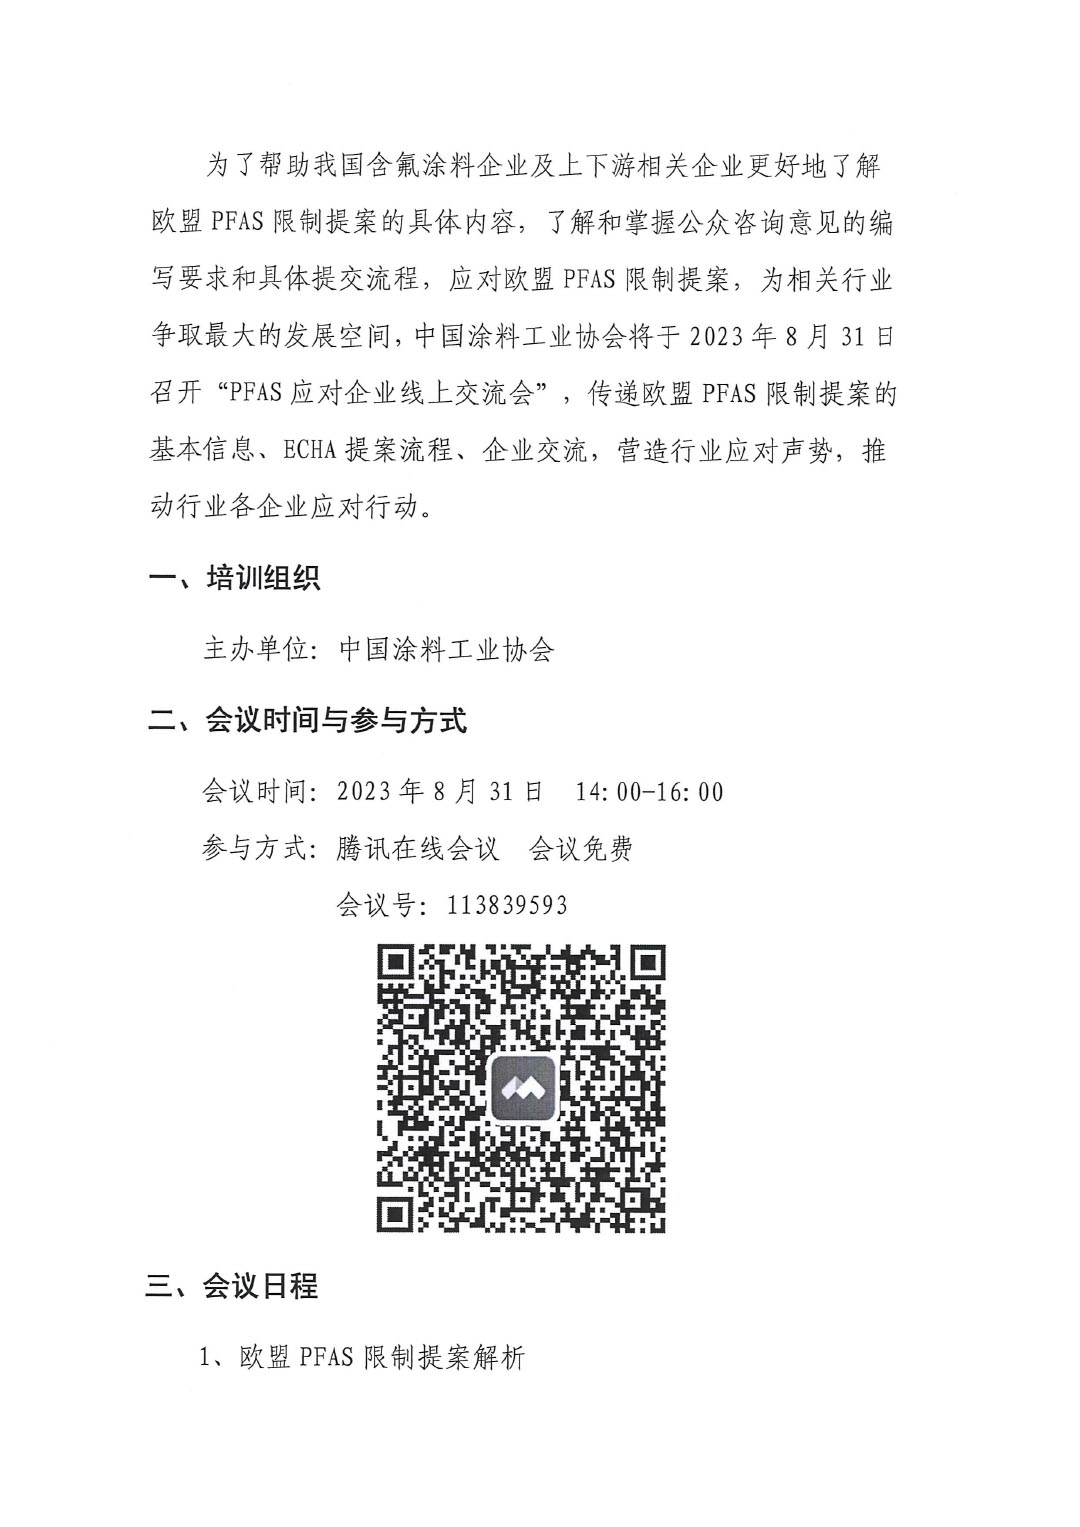 盖章--中国涂料工业协会关于PFAS限制应对线上培训、交流会的通知-2